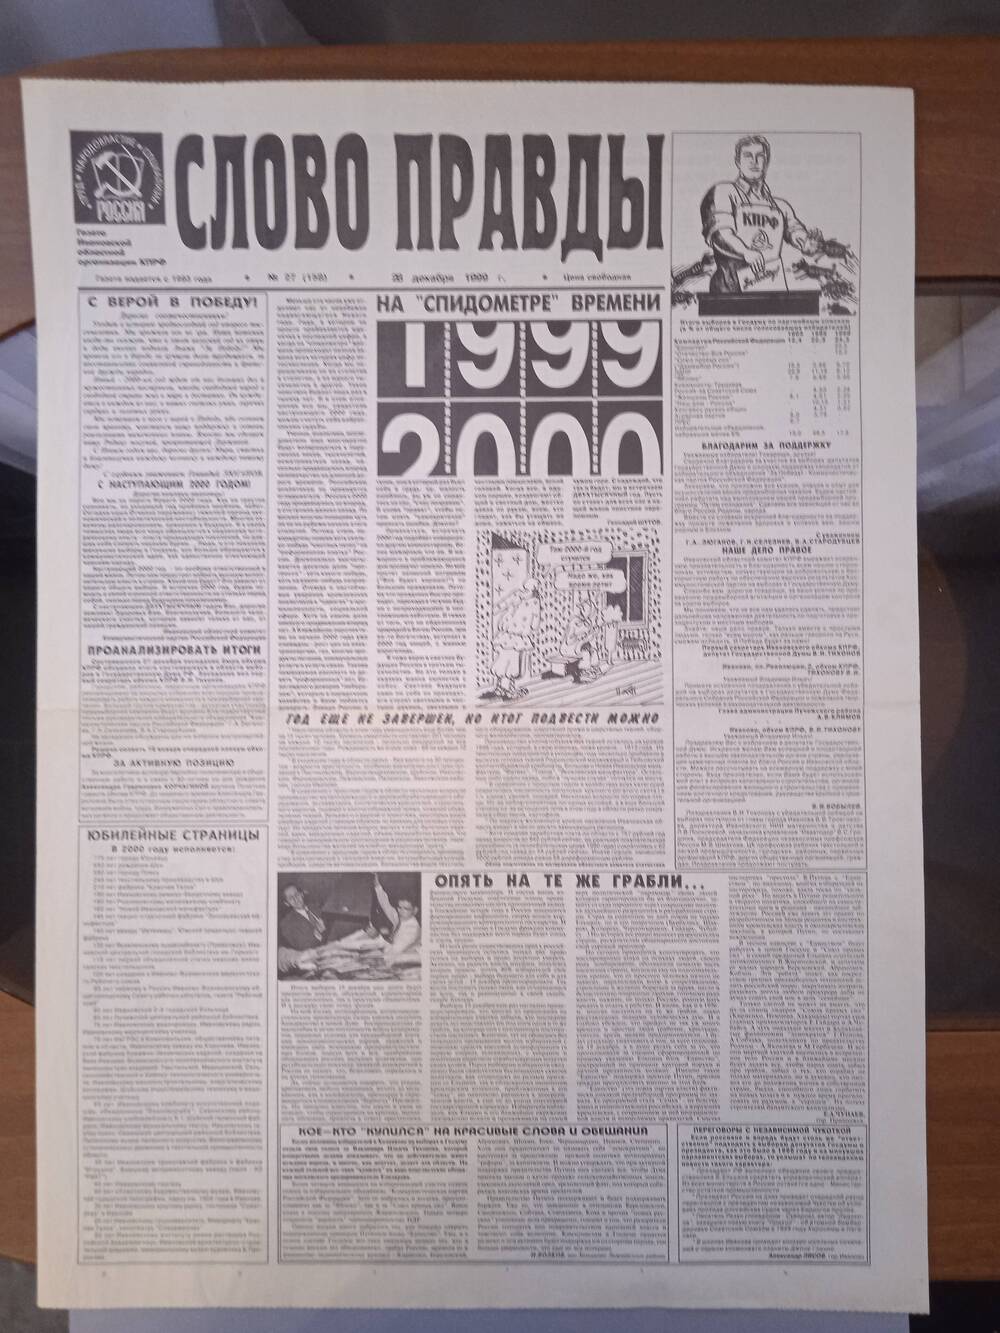 Газета «Слово Правды» № 27 от 28 декабря 1999 г. изд-е Ивановской обл. организации КПРФ.